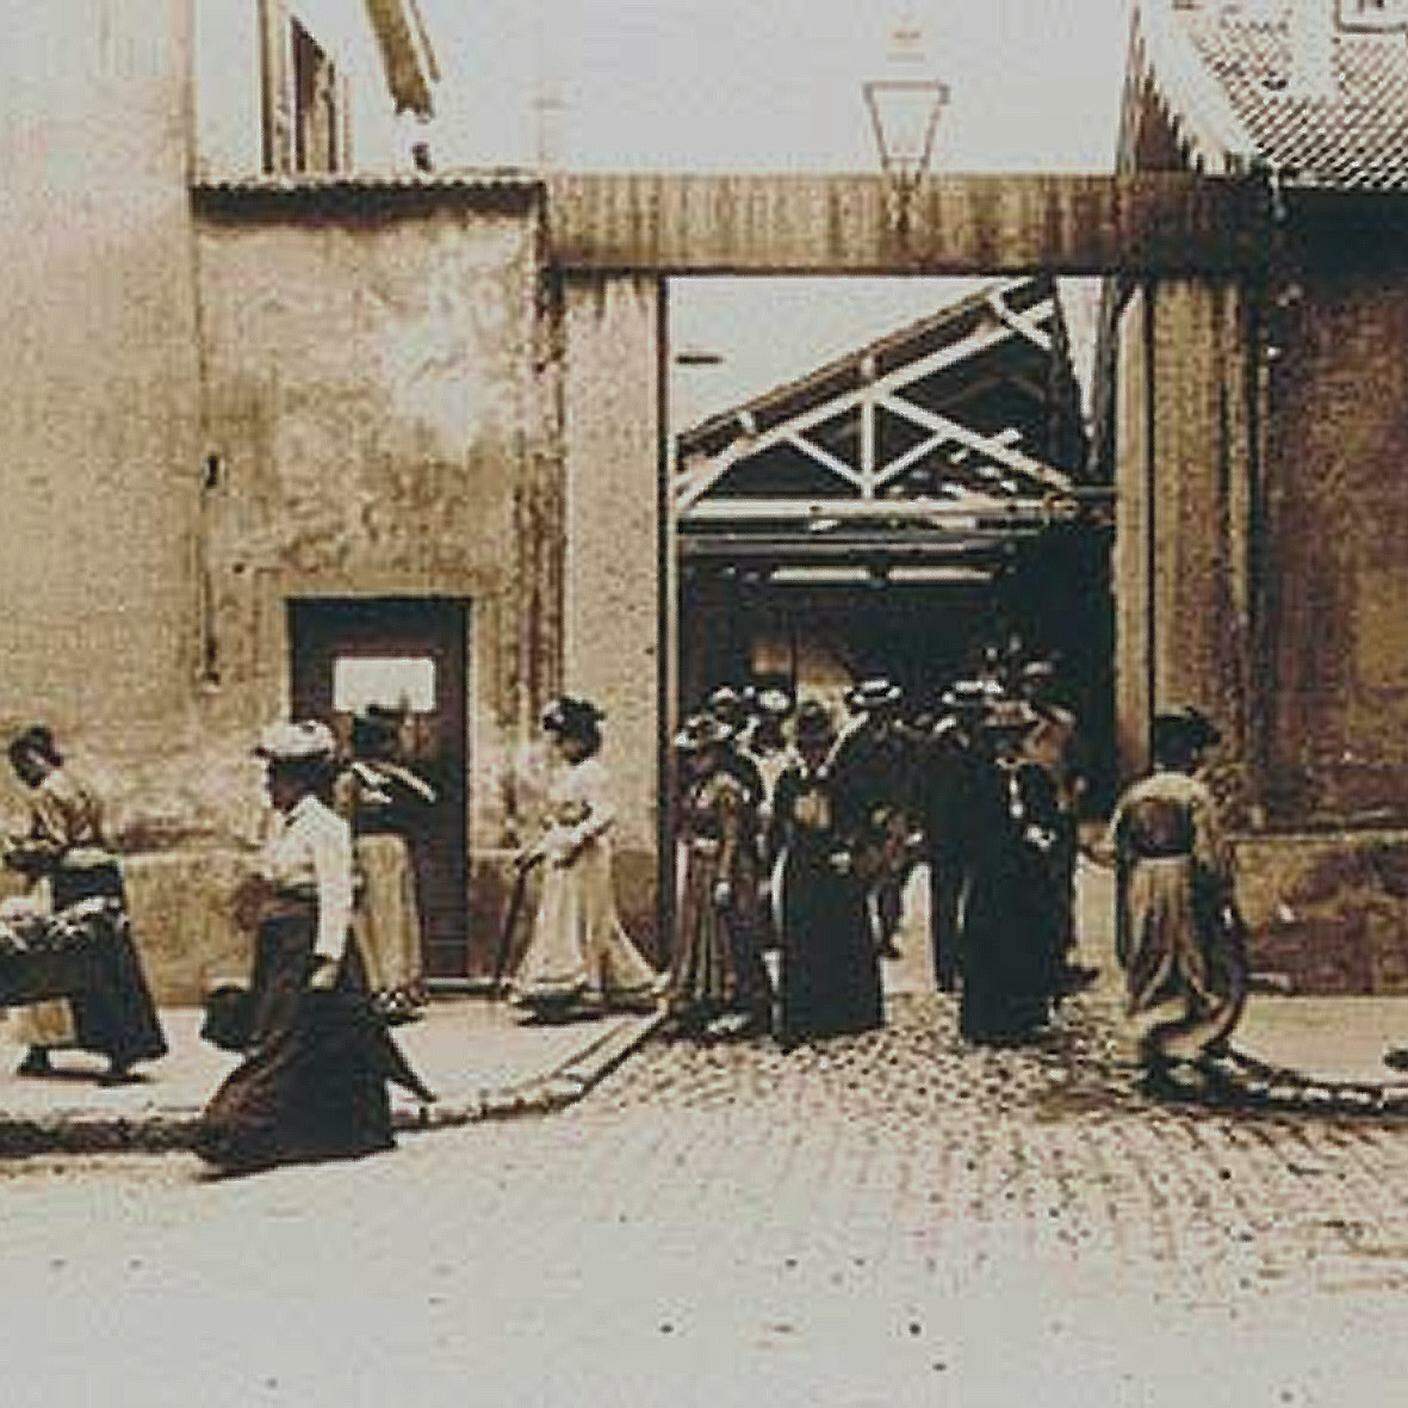 Uscita dalle officine Lumière, tratto da “La Sortie de l'usine Lumière” 